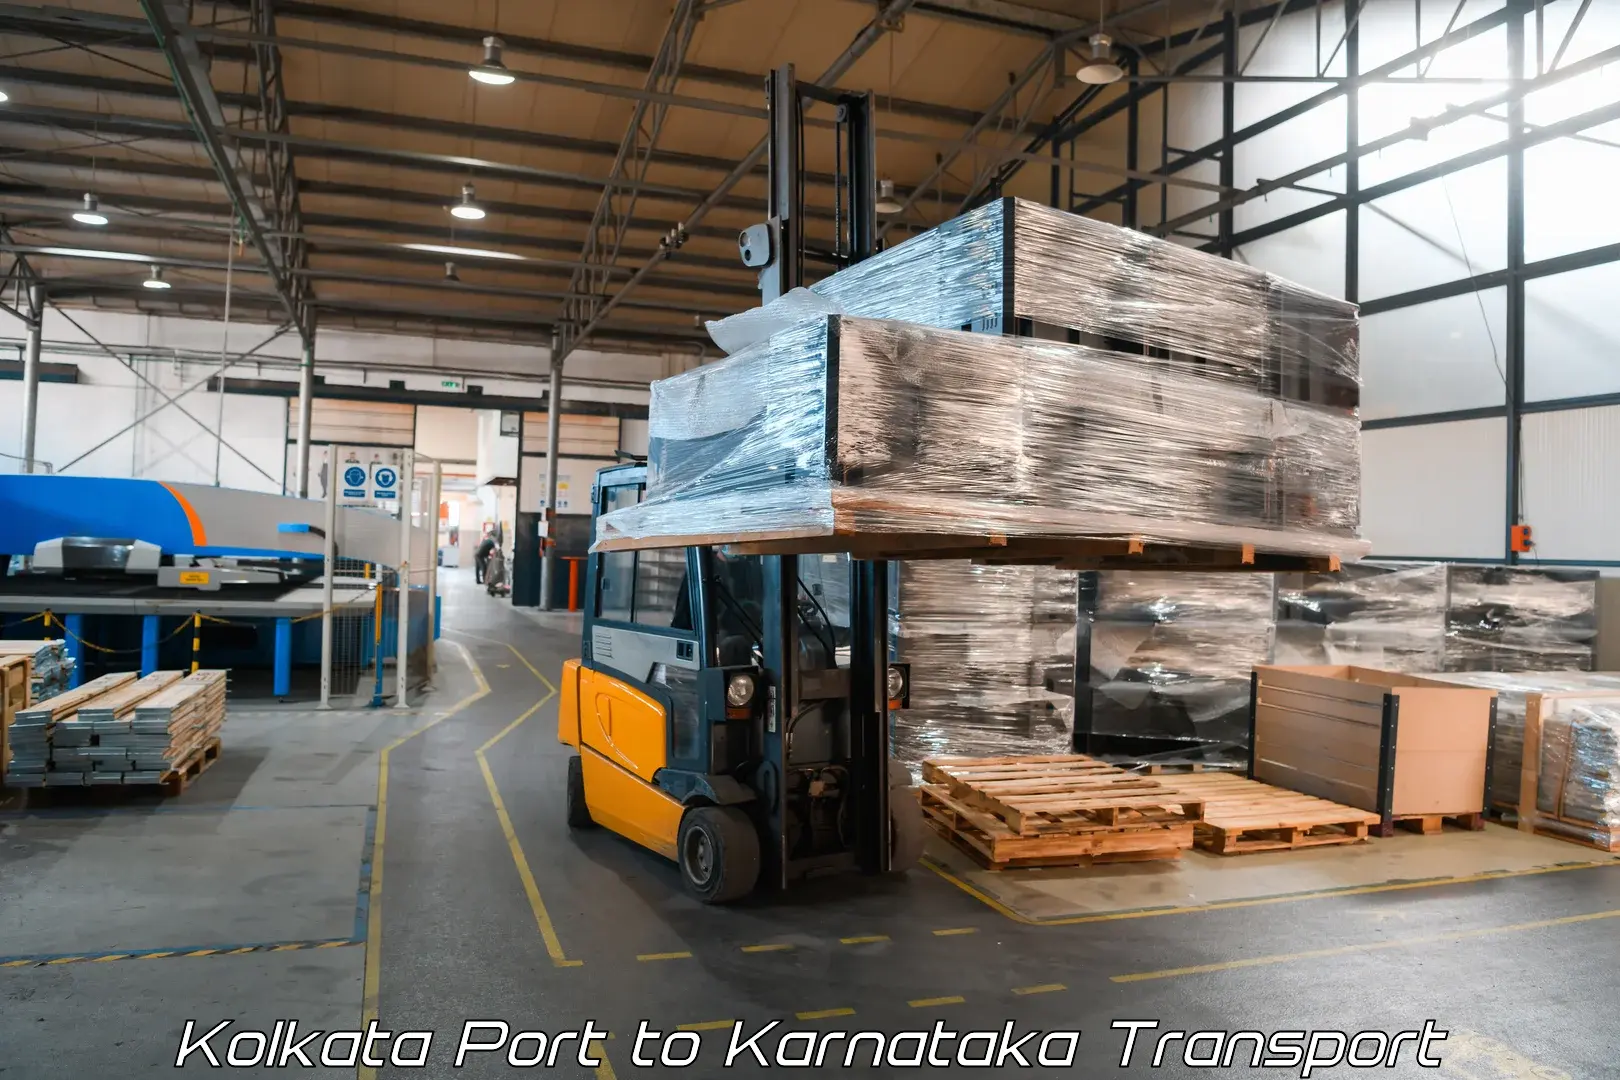 Online transport service Kolkata Port to Yenepoya Mangalore